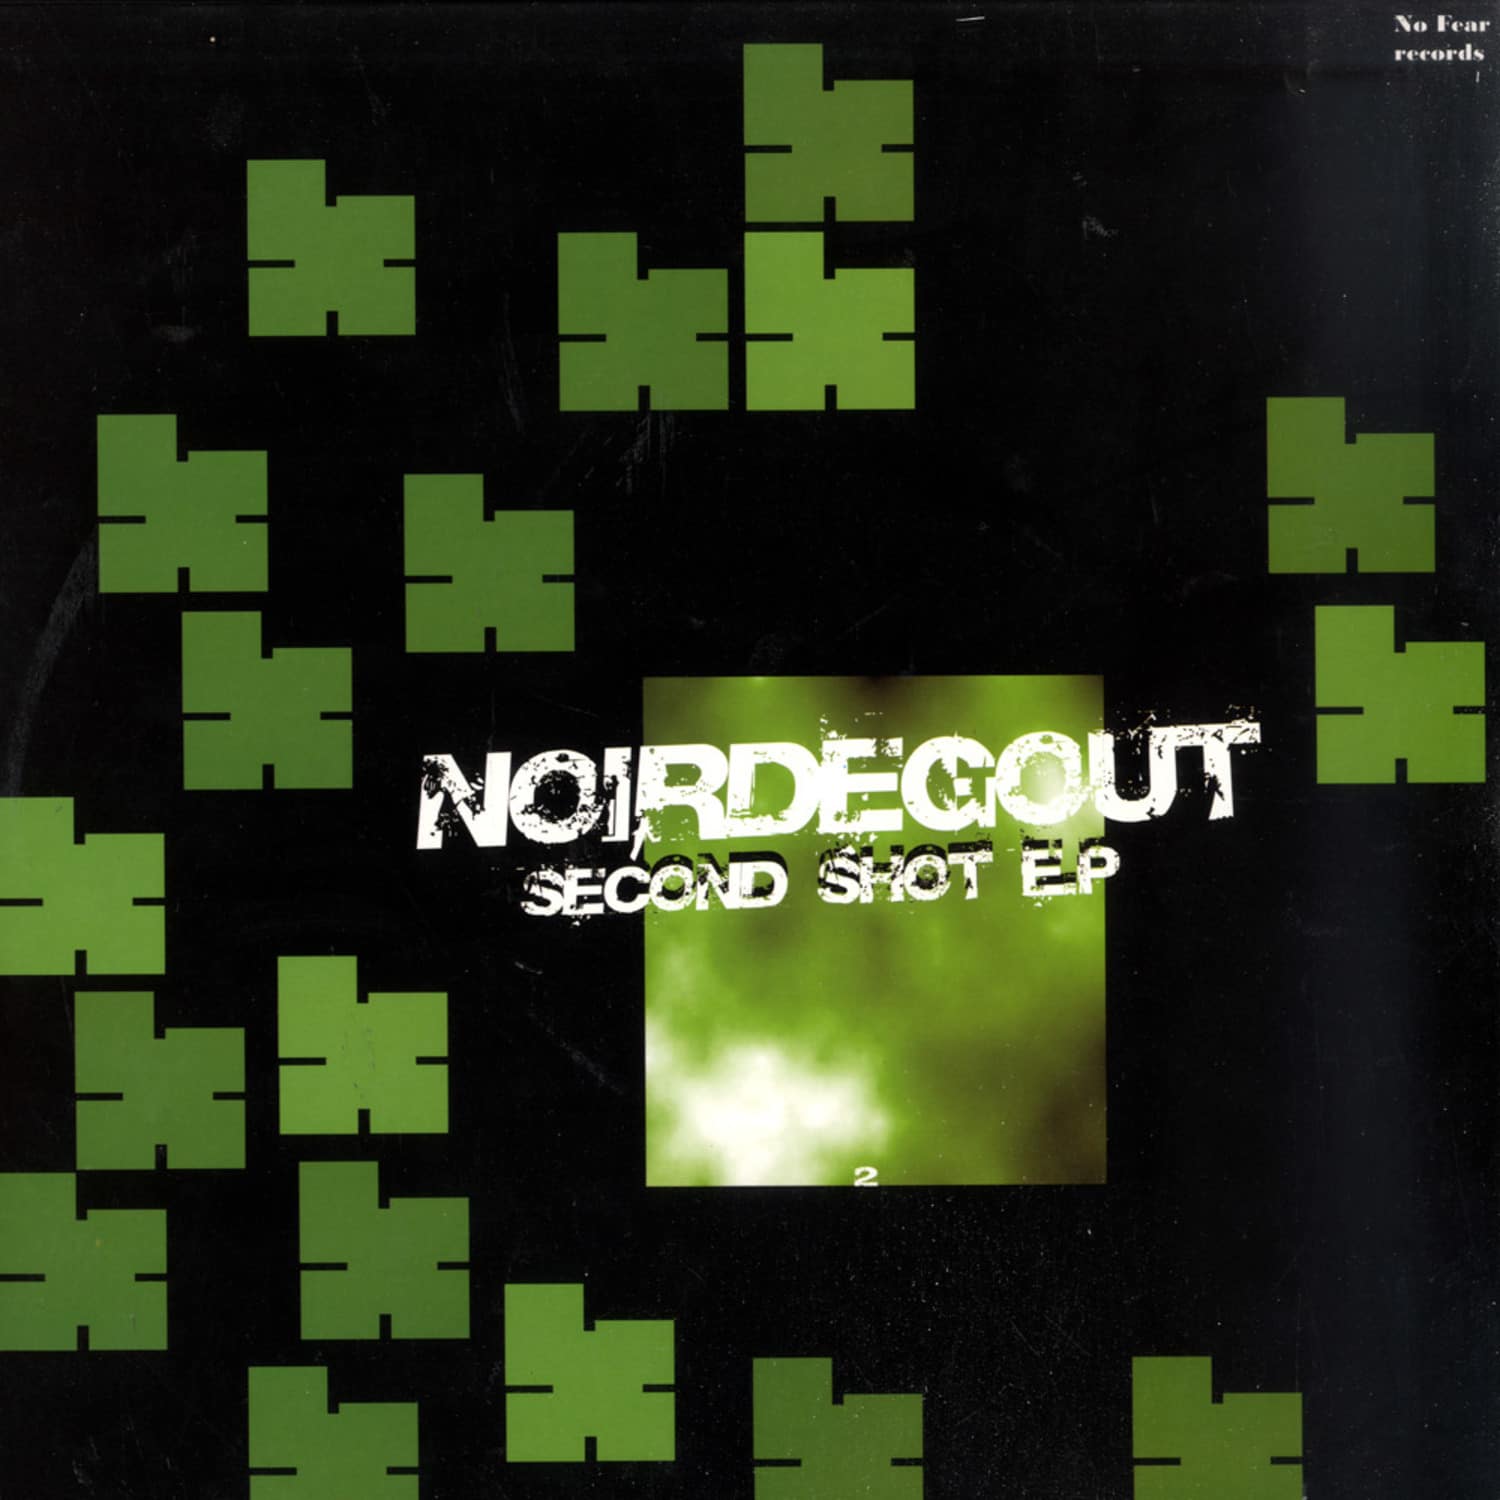 Noirdegout - SECOND SHOT EP